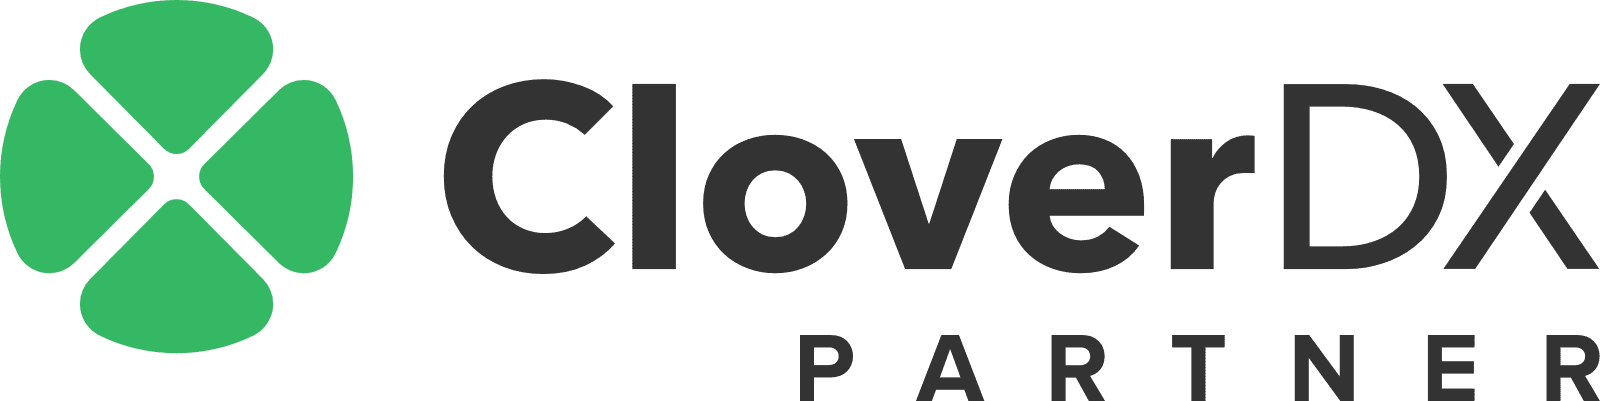 CloverDX_partner_logo